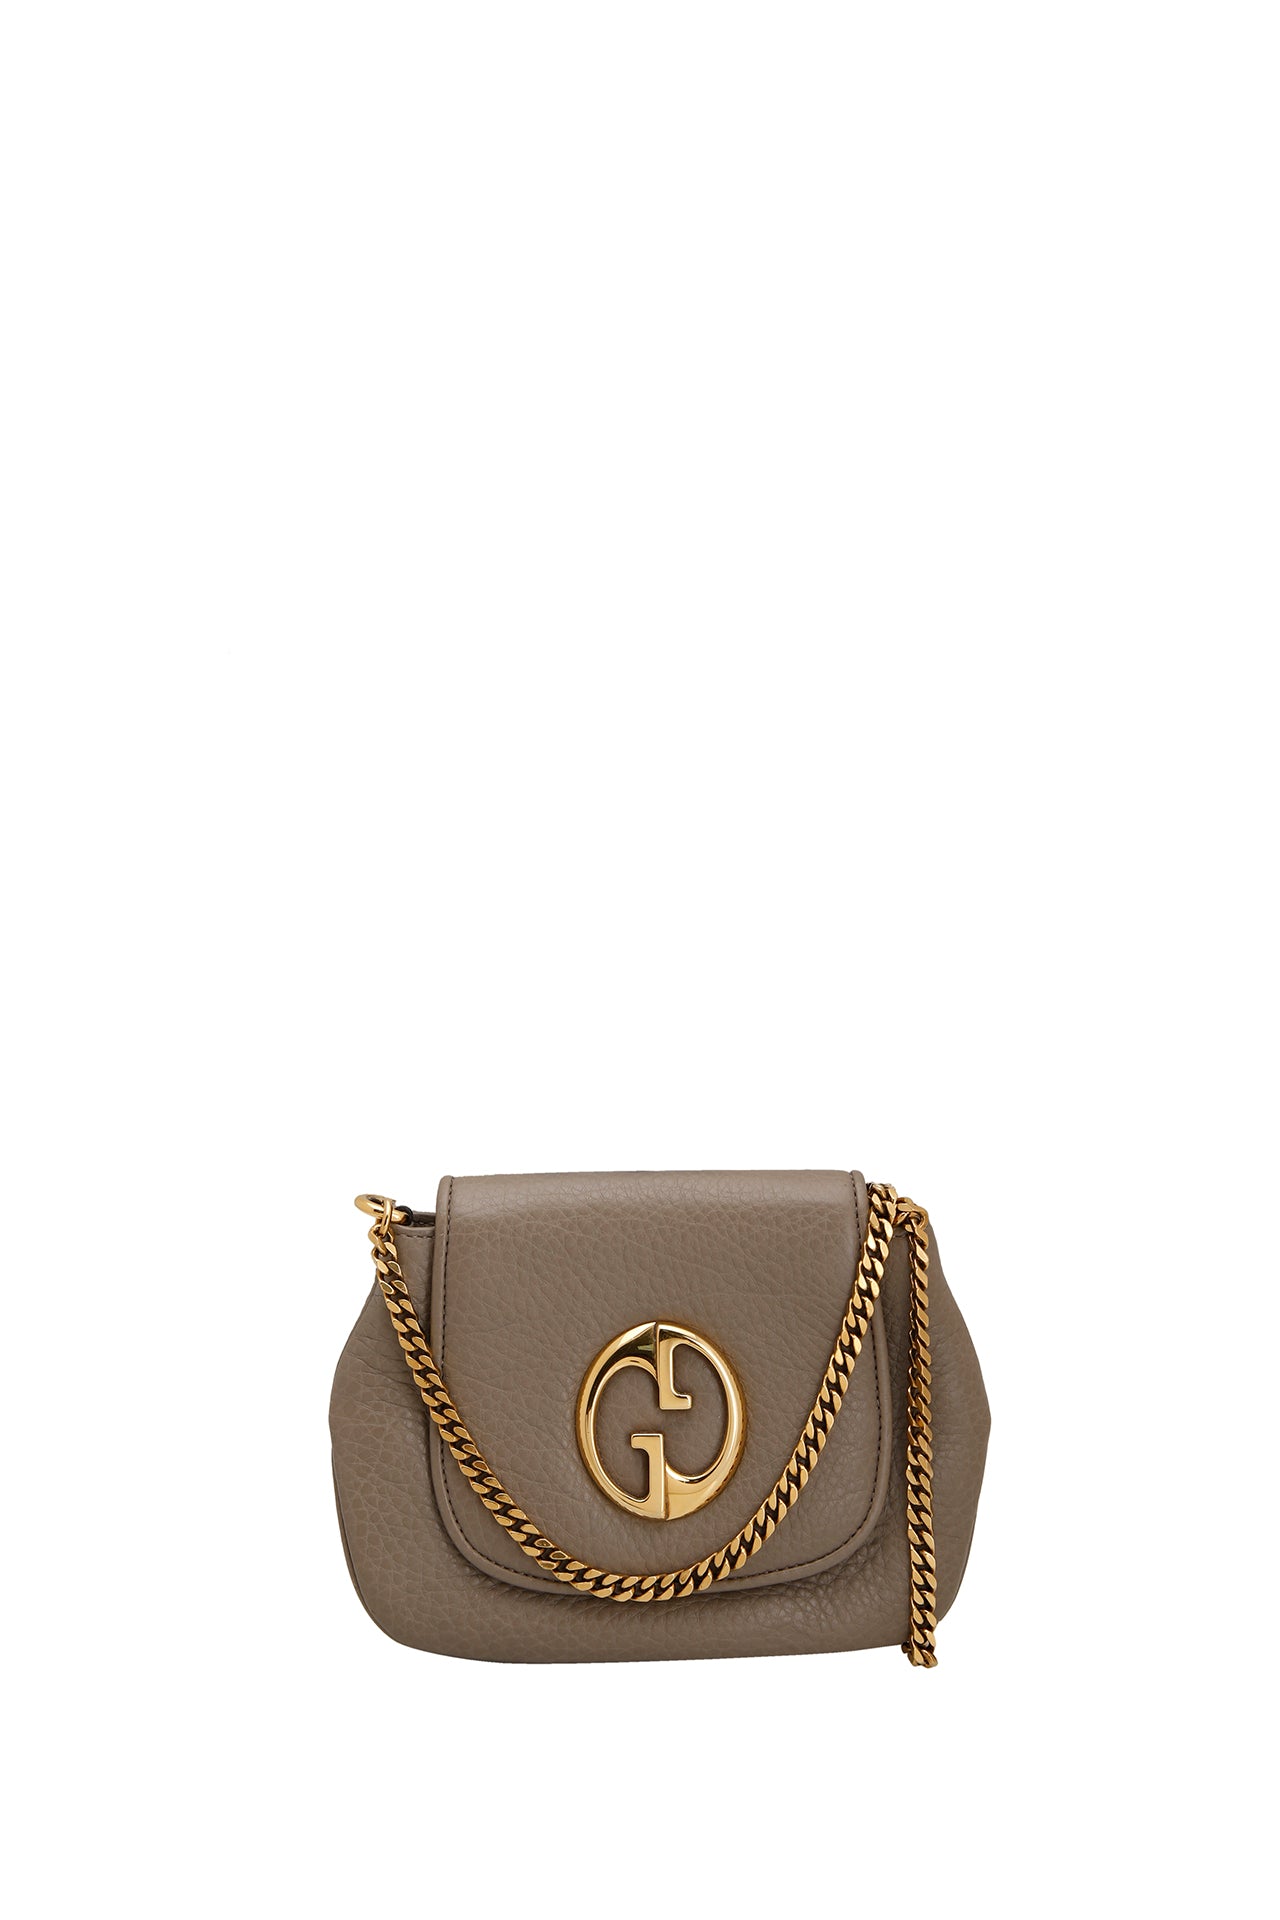 Gucci Grey Leather 1973 Flap Shoulder Bag